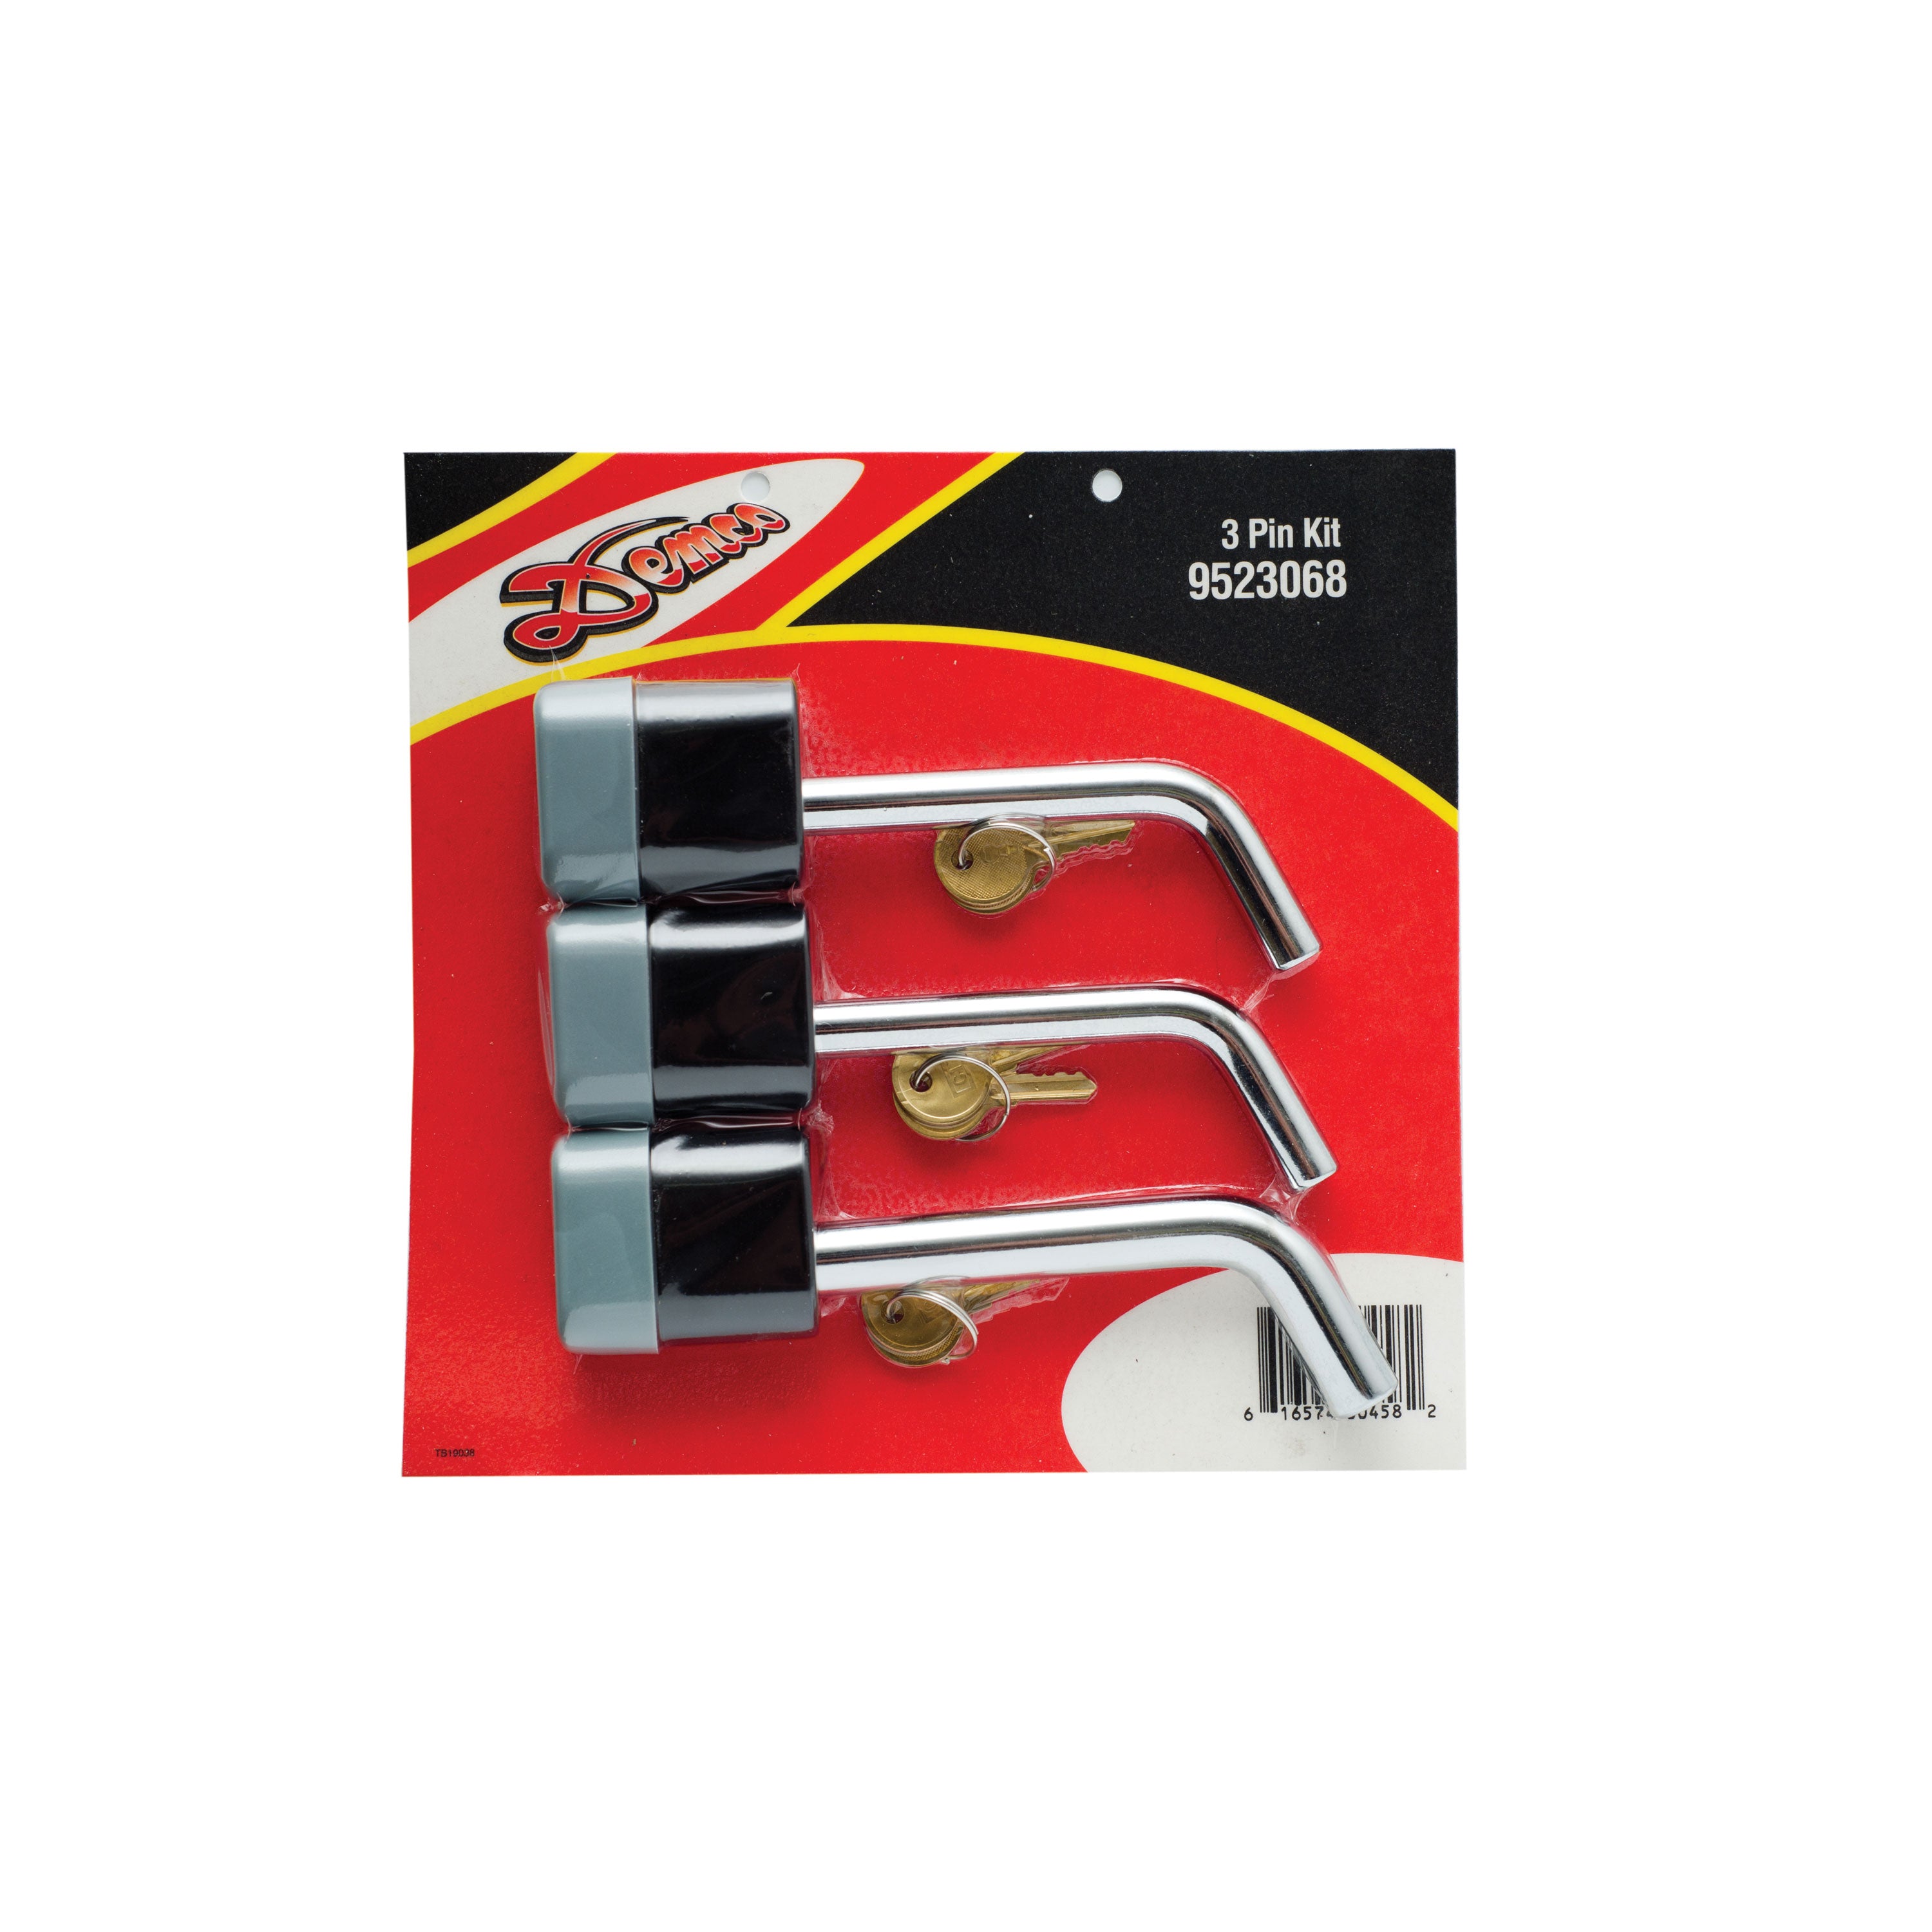 Demco 9523068 Locking Pin Kit - 3 Pack